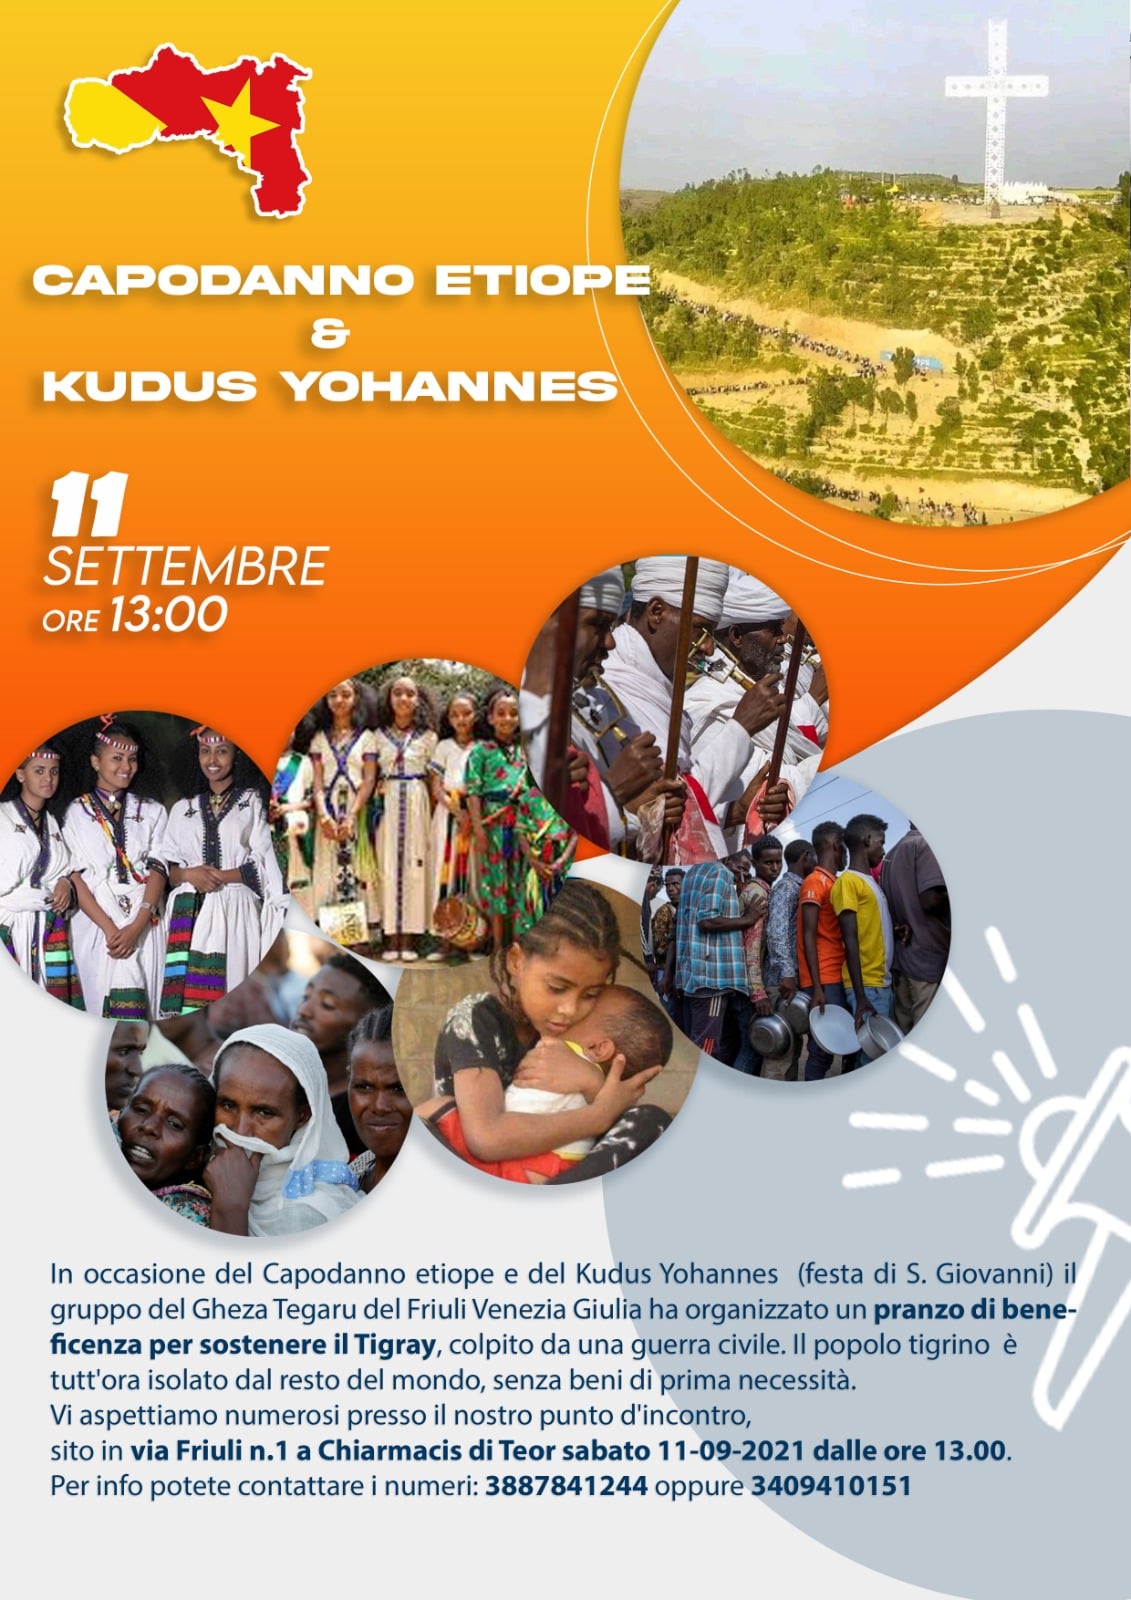 Pranzo beneficenza per il Tigray Etiopia - Capodanno Etiope e Festa di San Giovanni - Via Friuli n.1 Chiarmacis di Teor (Udine)